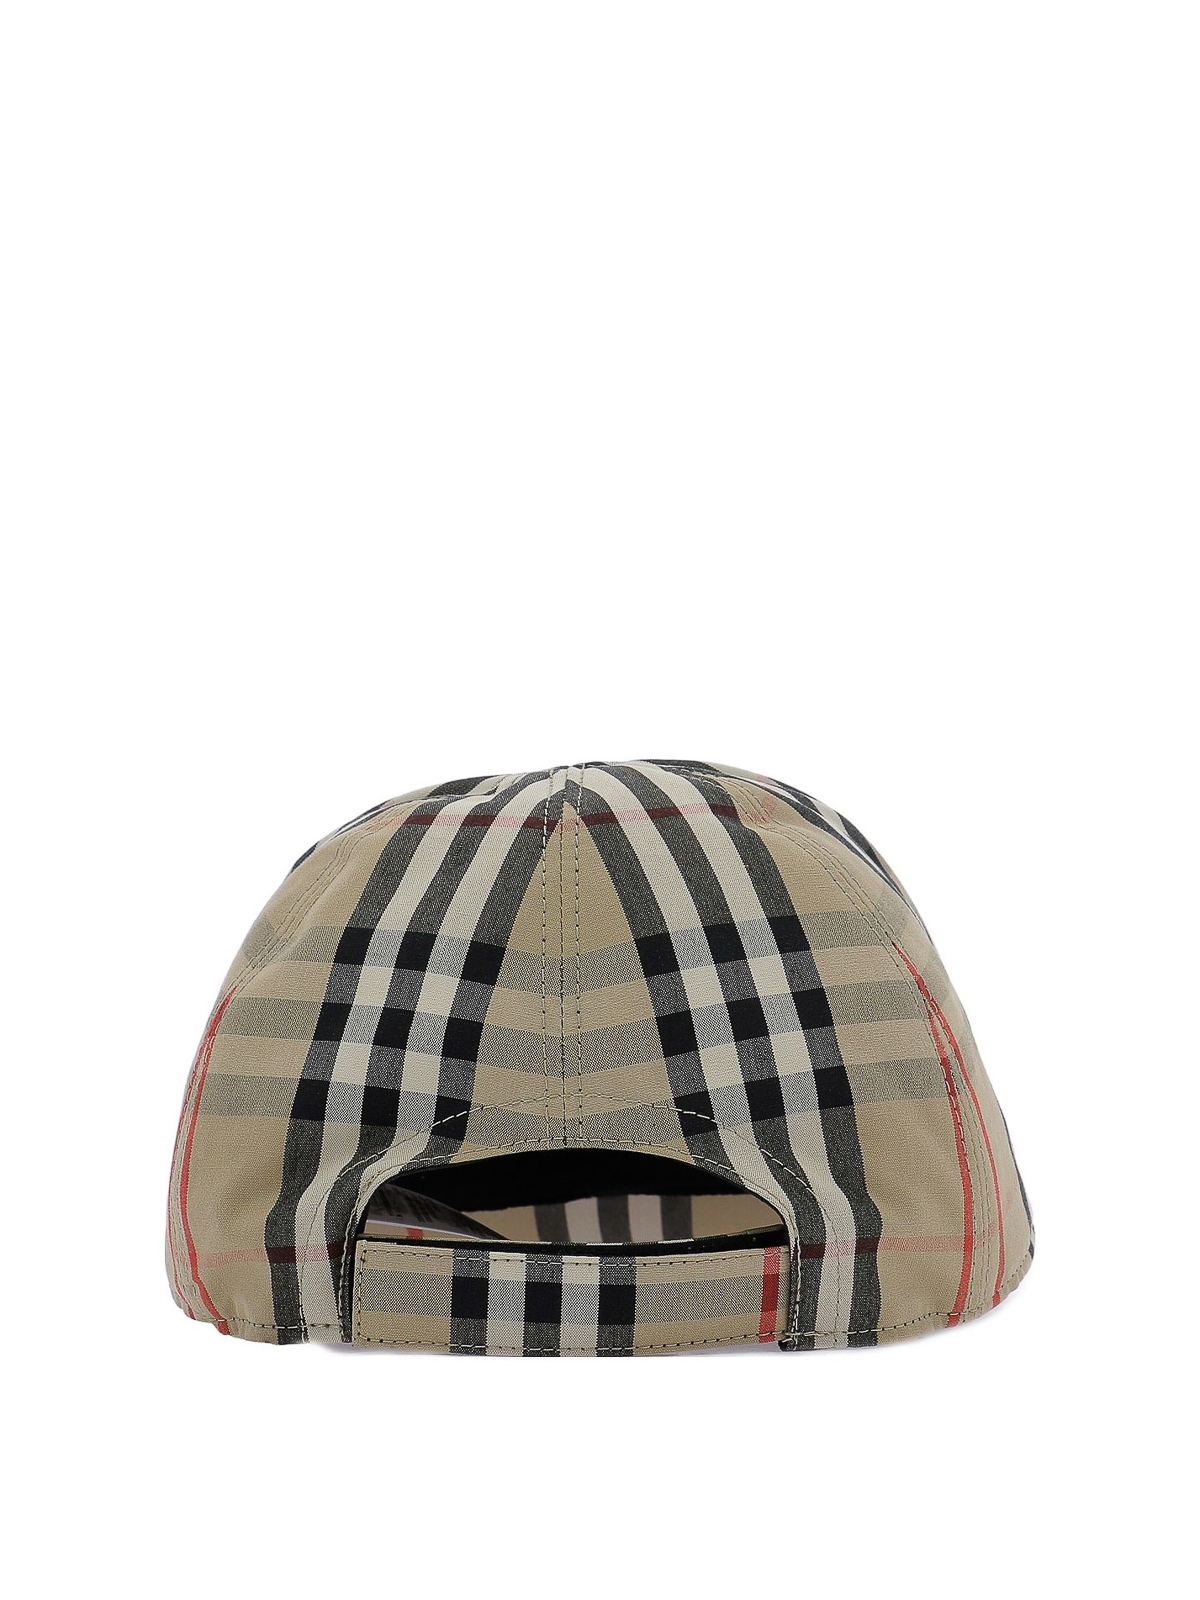 Hats & caps Burberry - Vintage check baseball cap - 8015737 | iKRIX.com